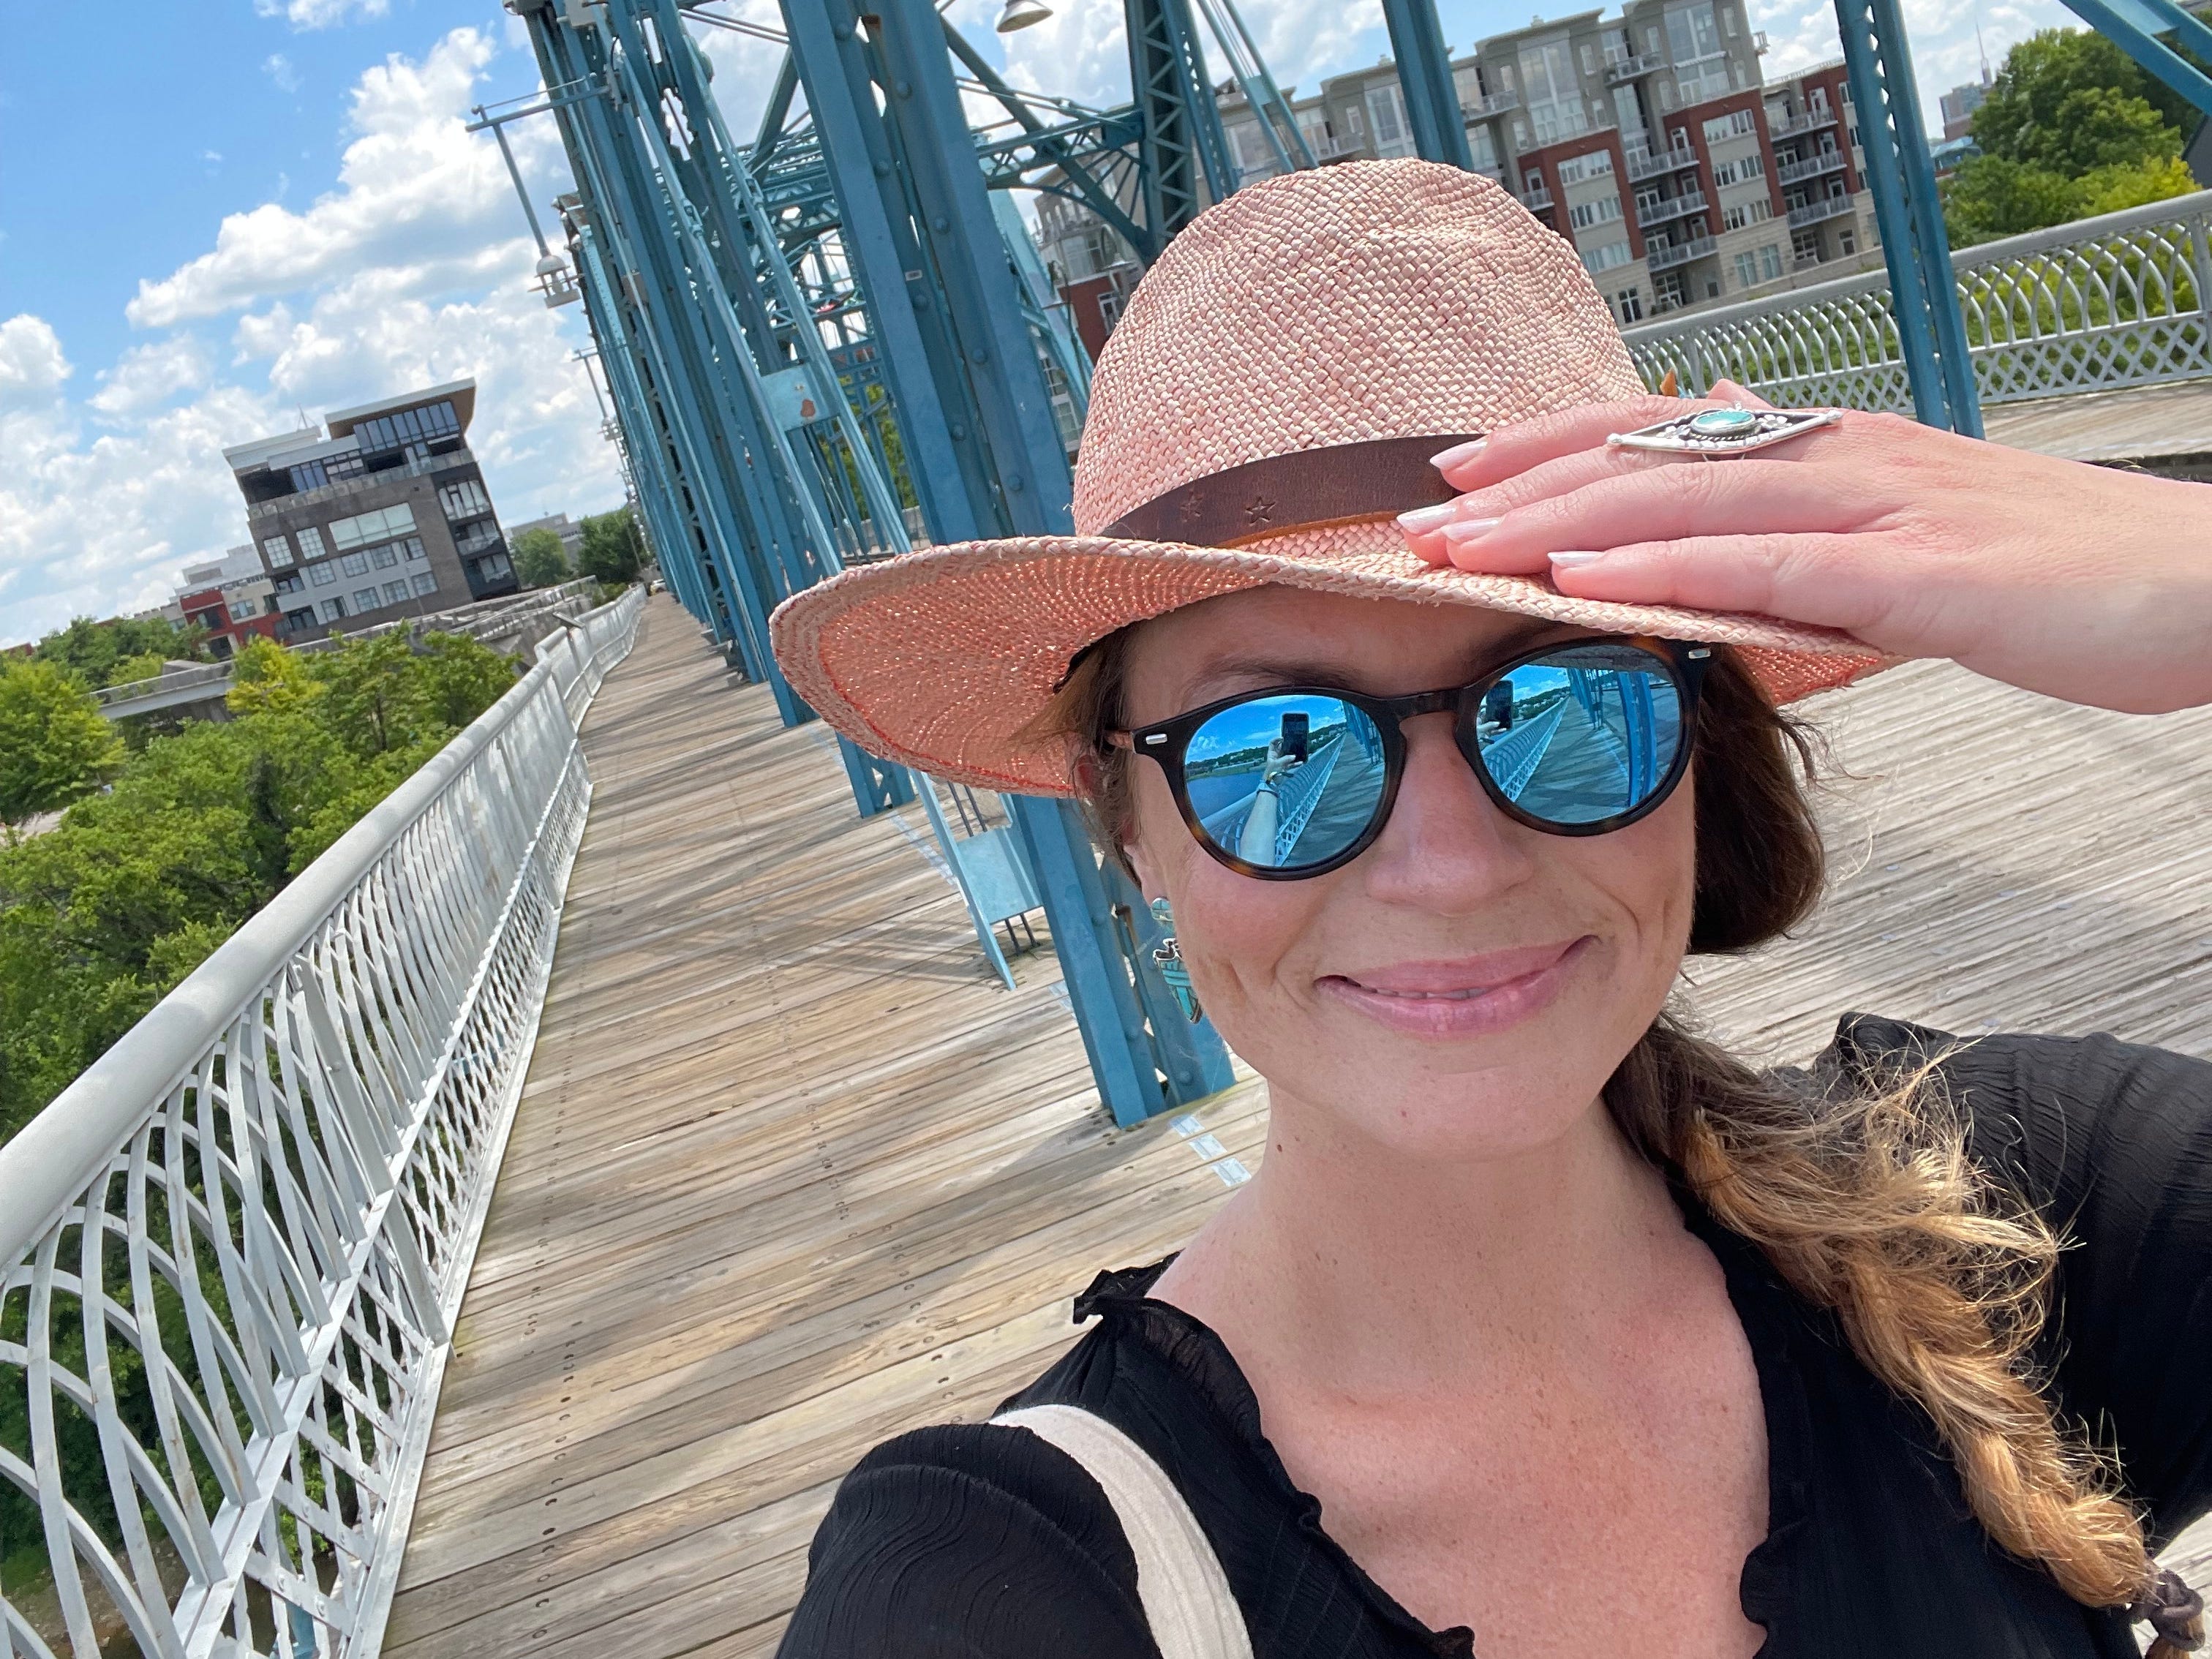 Emily, die ein schwarzes Hemd, eine Sonnenbrille und einen rosa Hut trägt, macht ein Selfie auf einer Brücke.